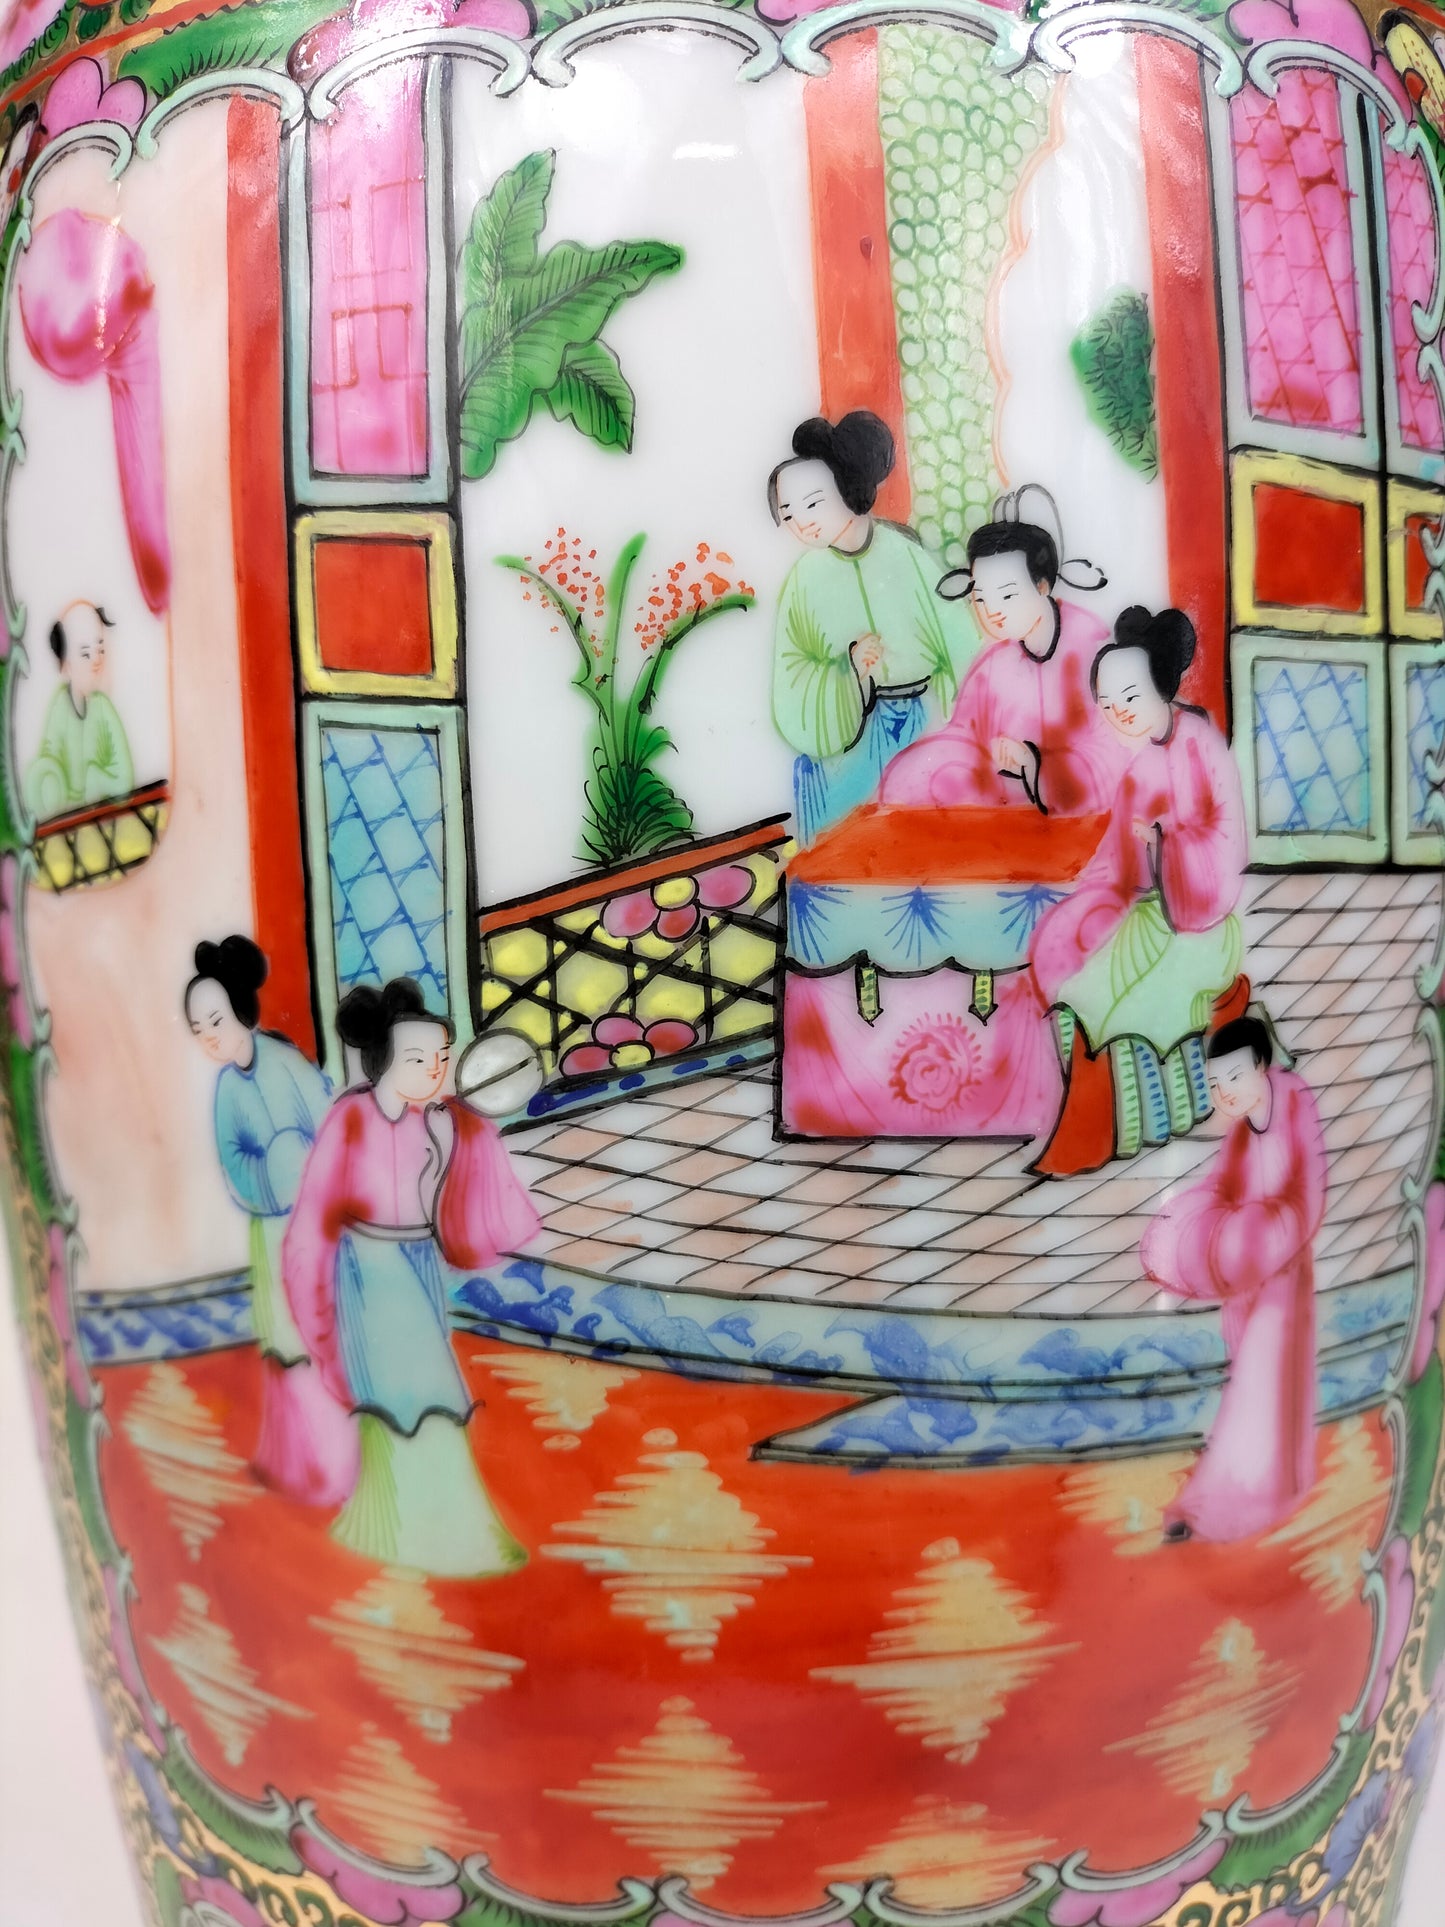 Grand vase médaillon rose de canton chinois à décor de personnages et de fleurs // XXème siècle